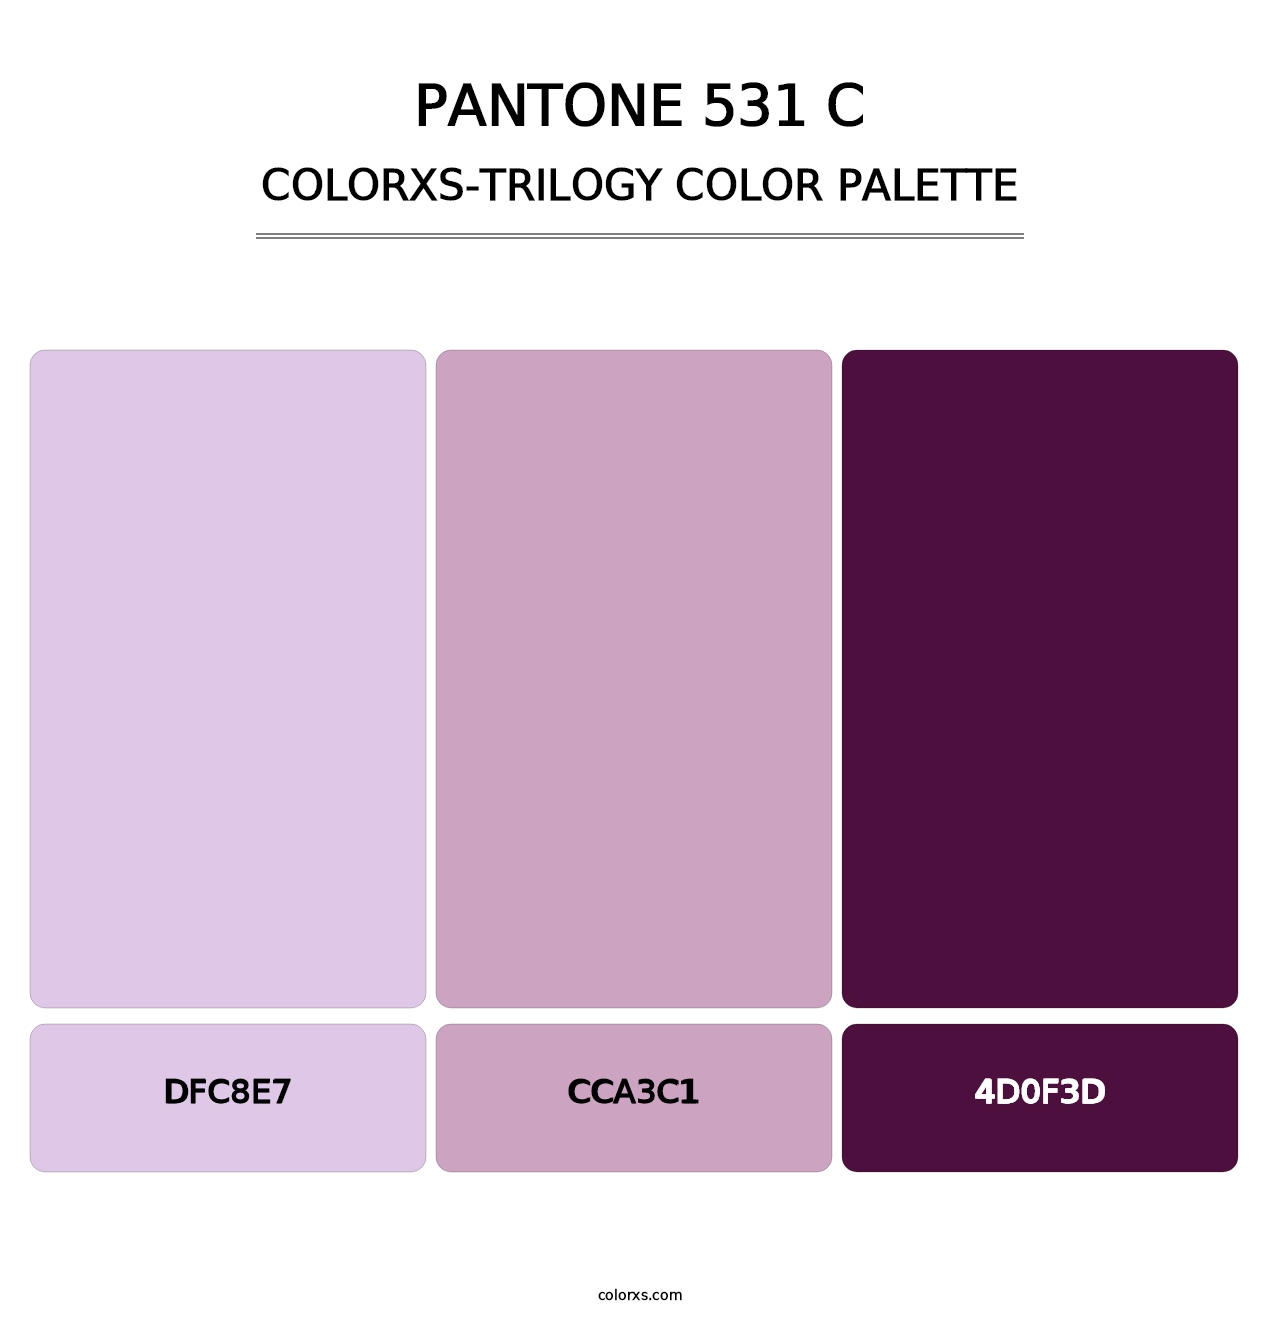 PANTONE 531 C - Colorxs Trilogy Palette